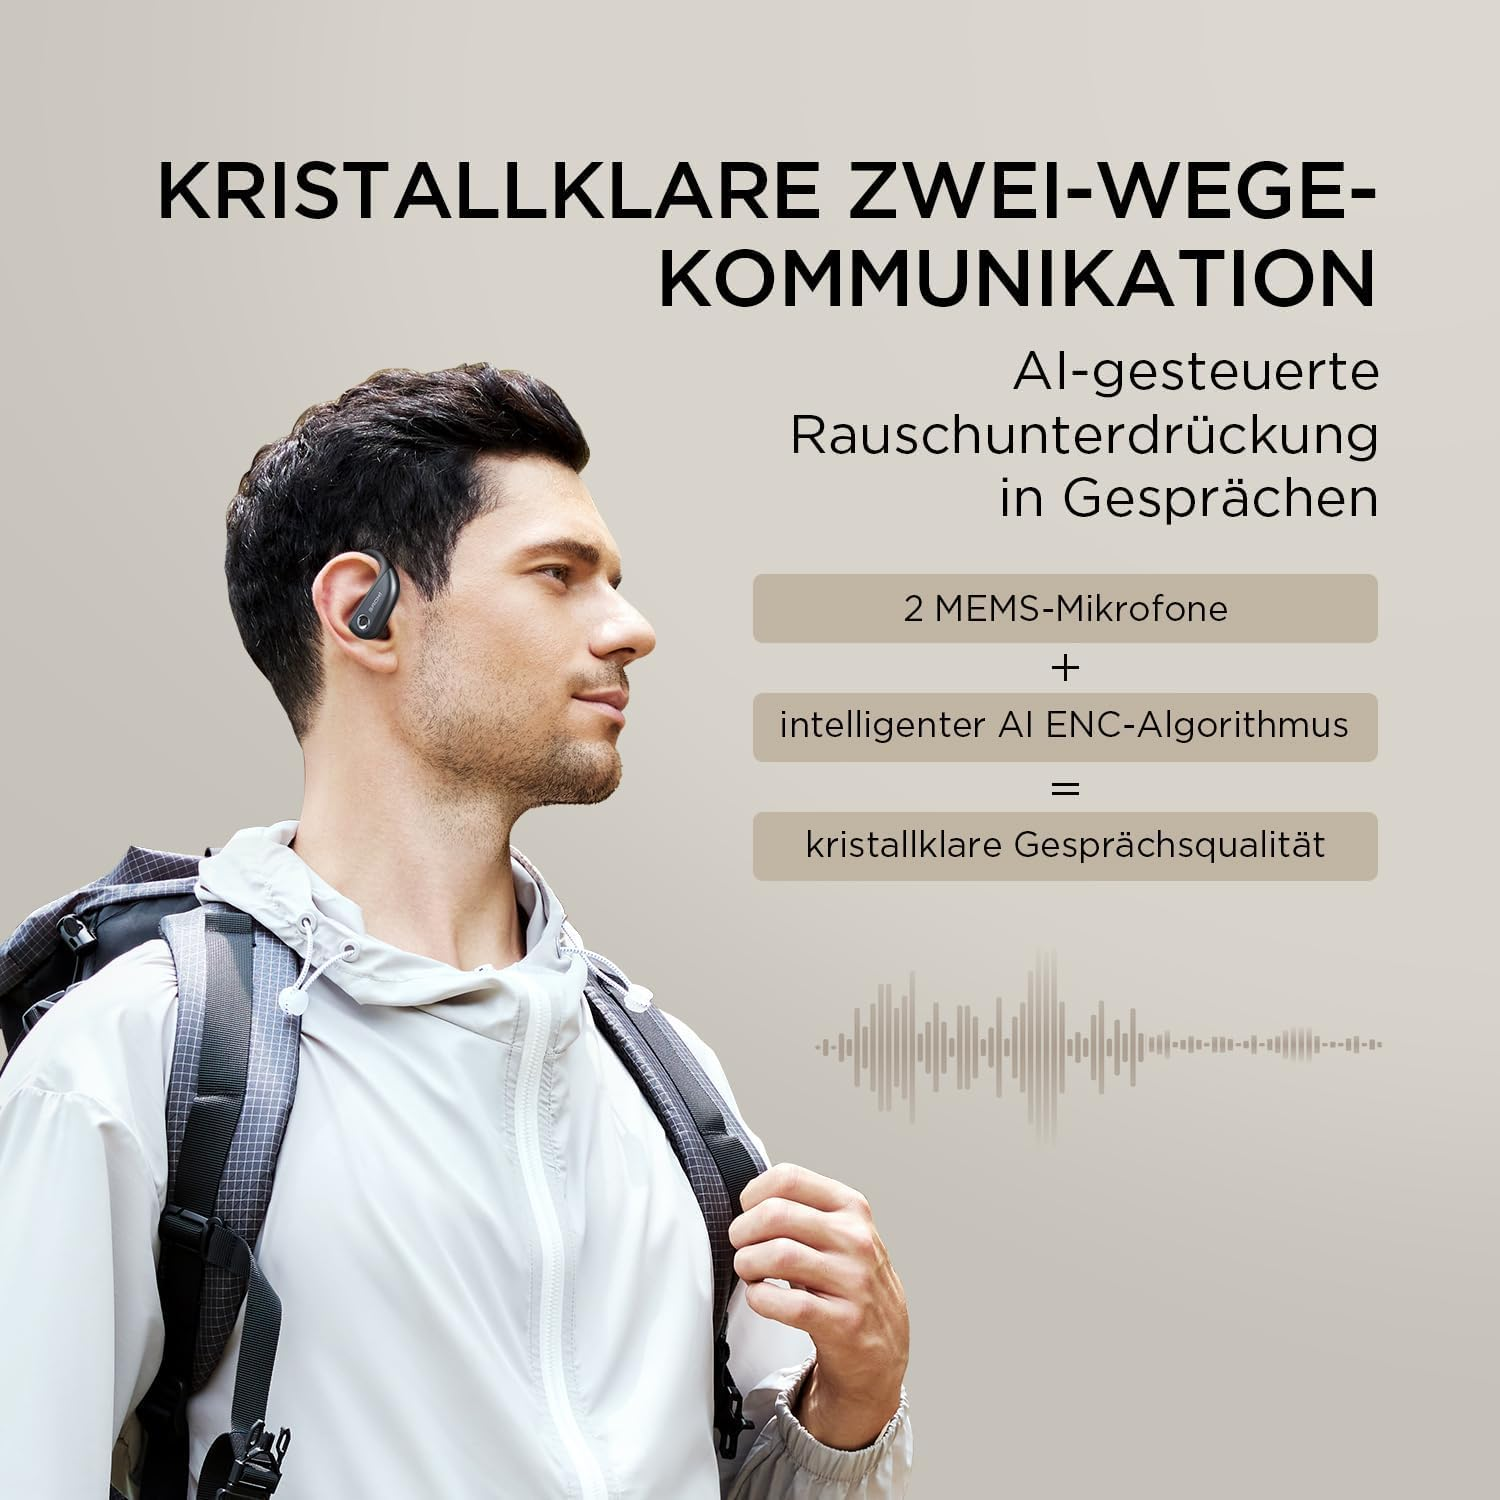 1MORE Kopfhörer Fit Open-ear Bluetooth Grau S50,